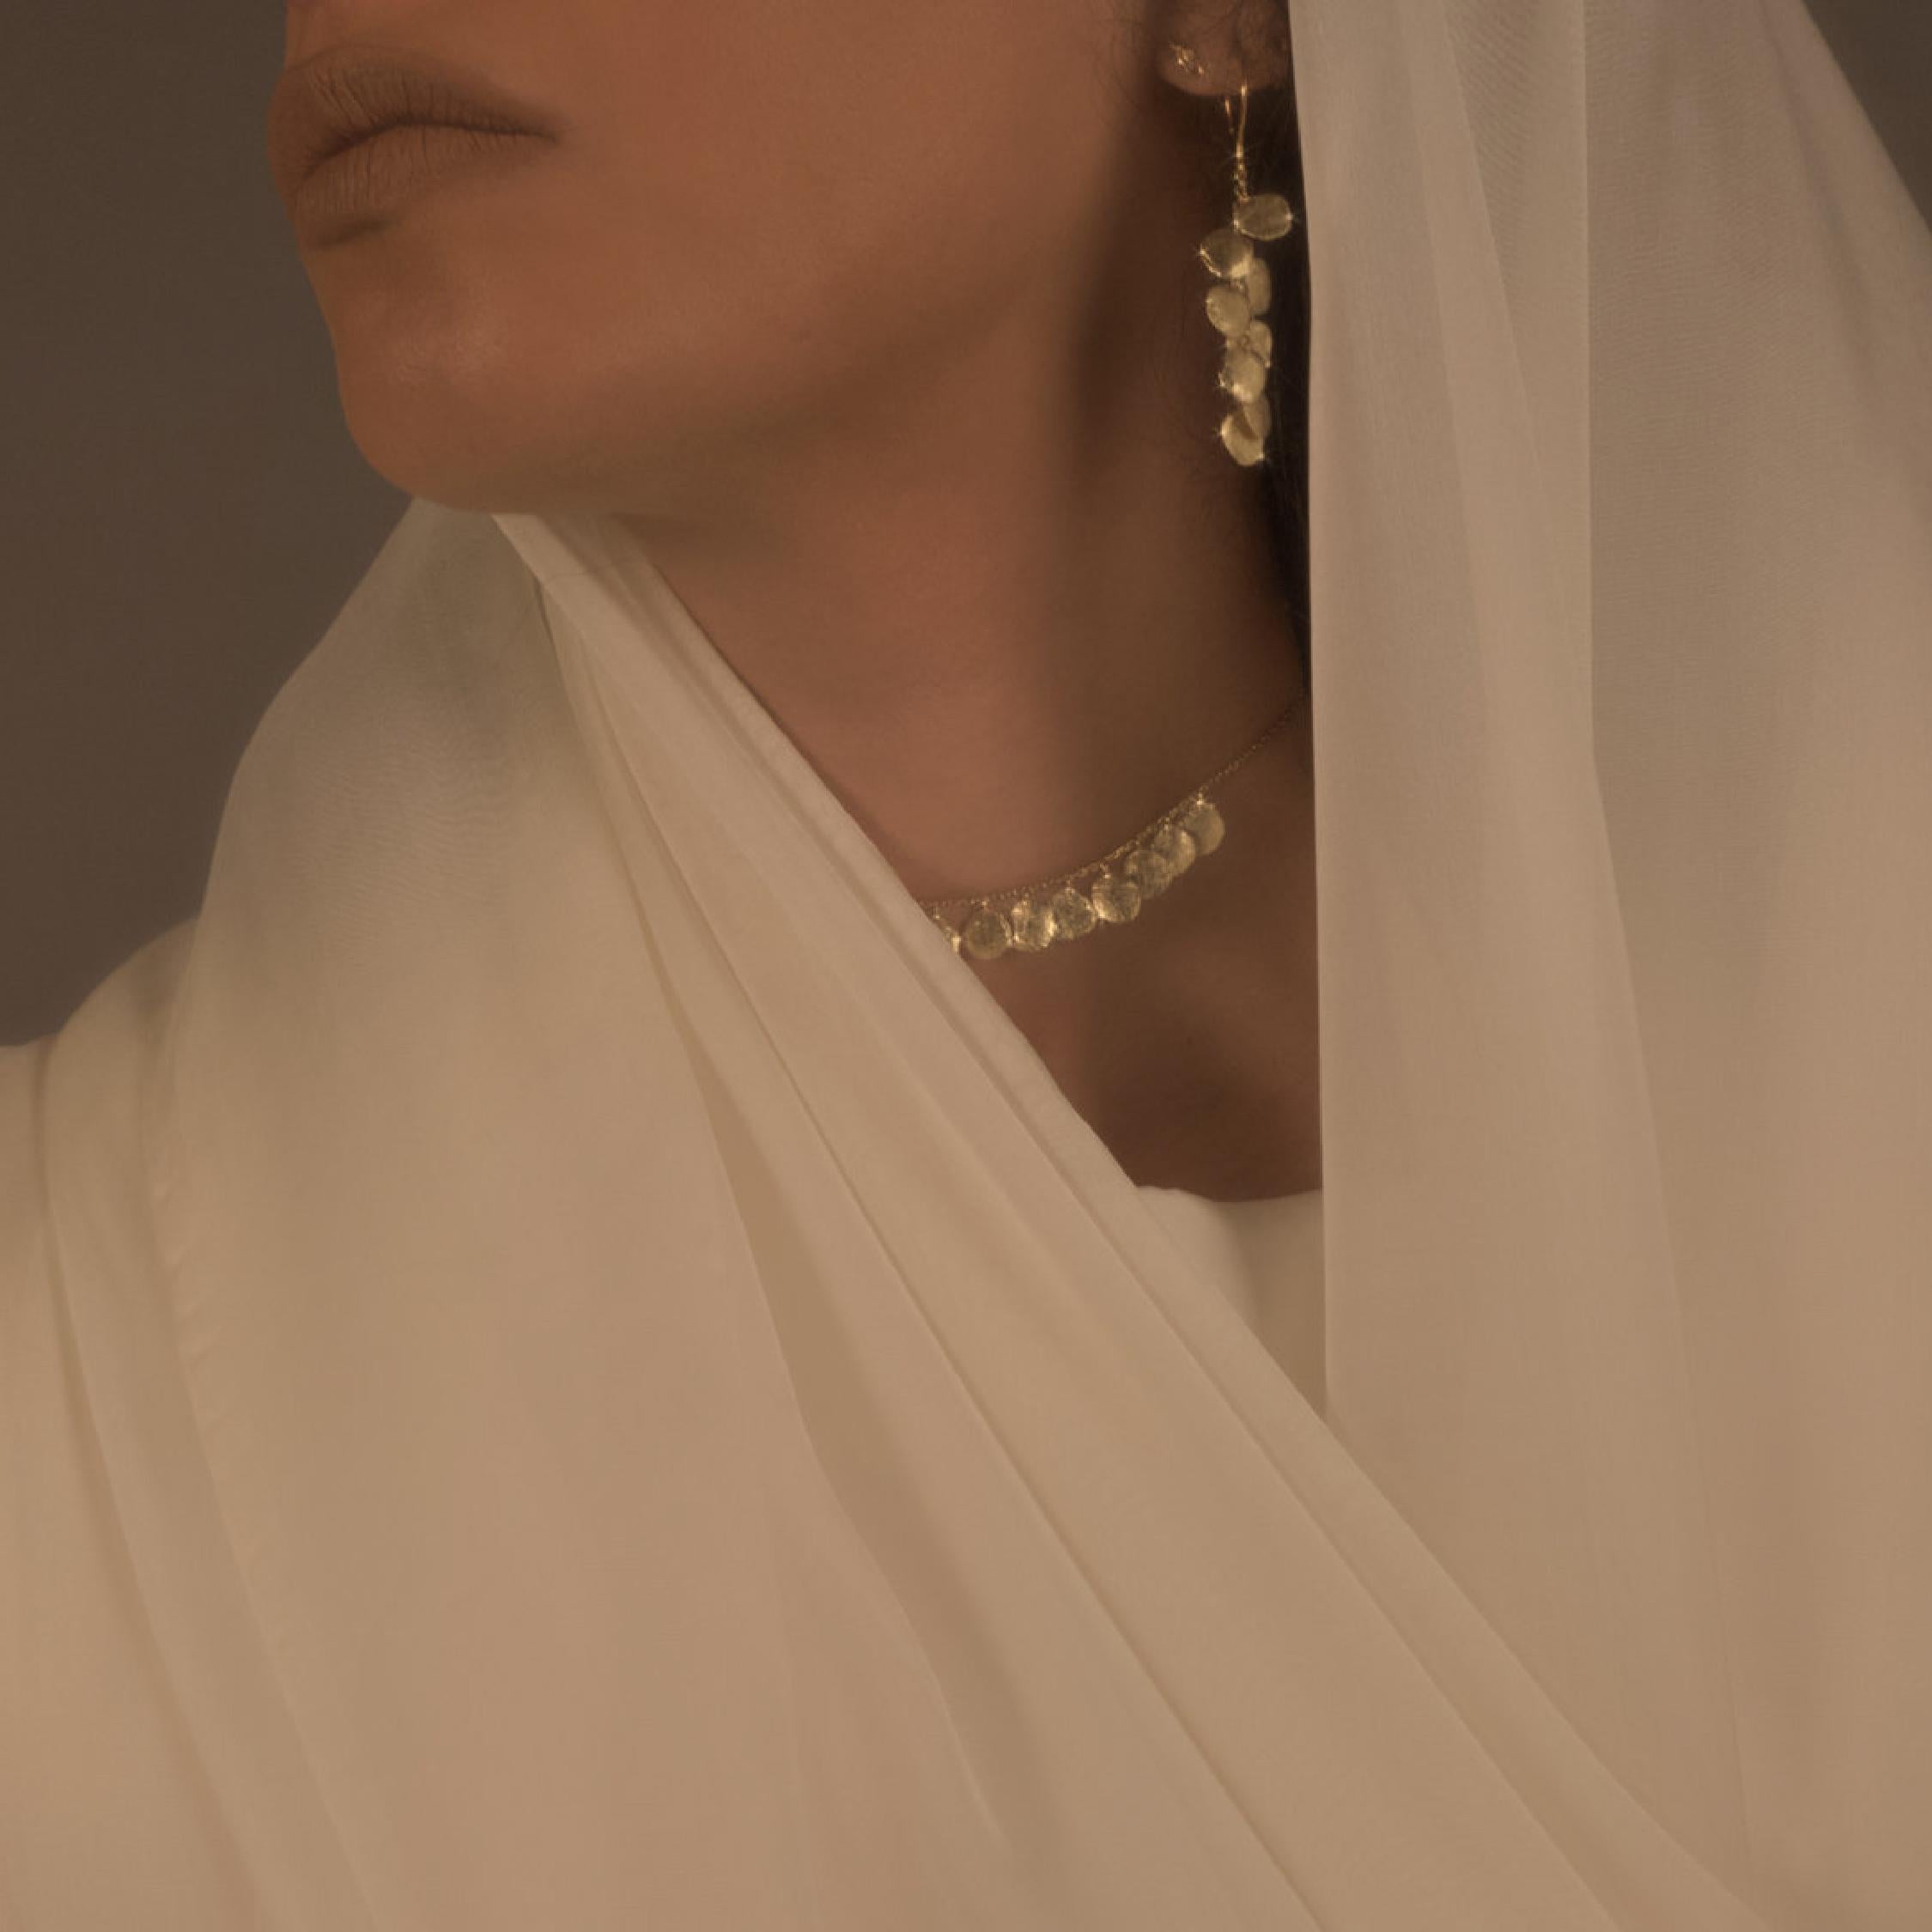 La collection Satami apporte une élégance subtile et une simplicité à la conception de bijoux traditionnels, où les teintes intemporelles de l'or jaune brut et des rubis profonds occupent le devant de la scène. Inspirée par les colliers portés à